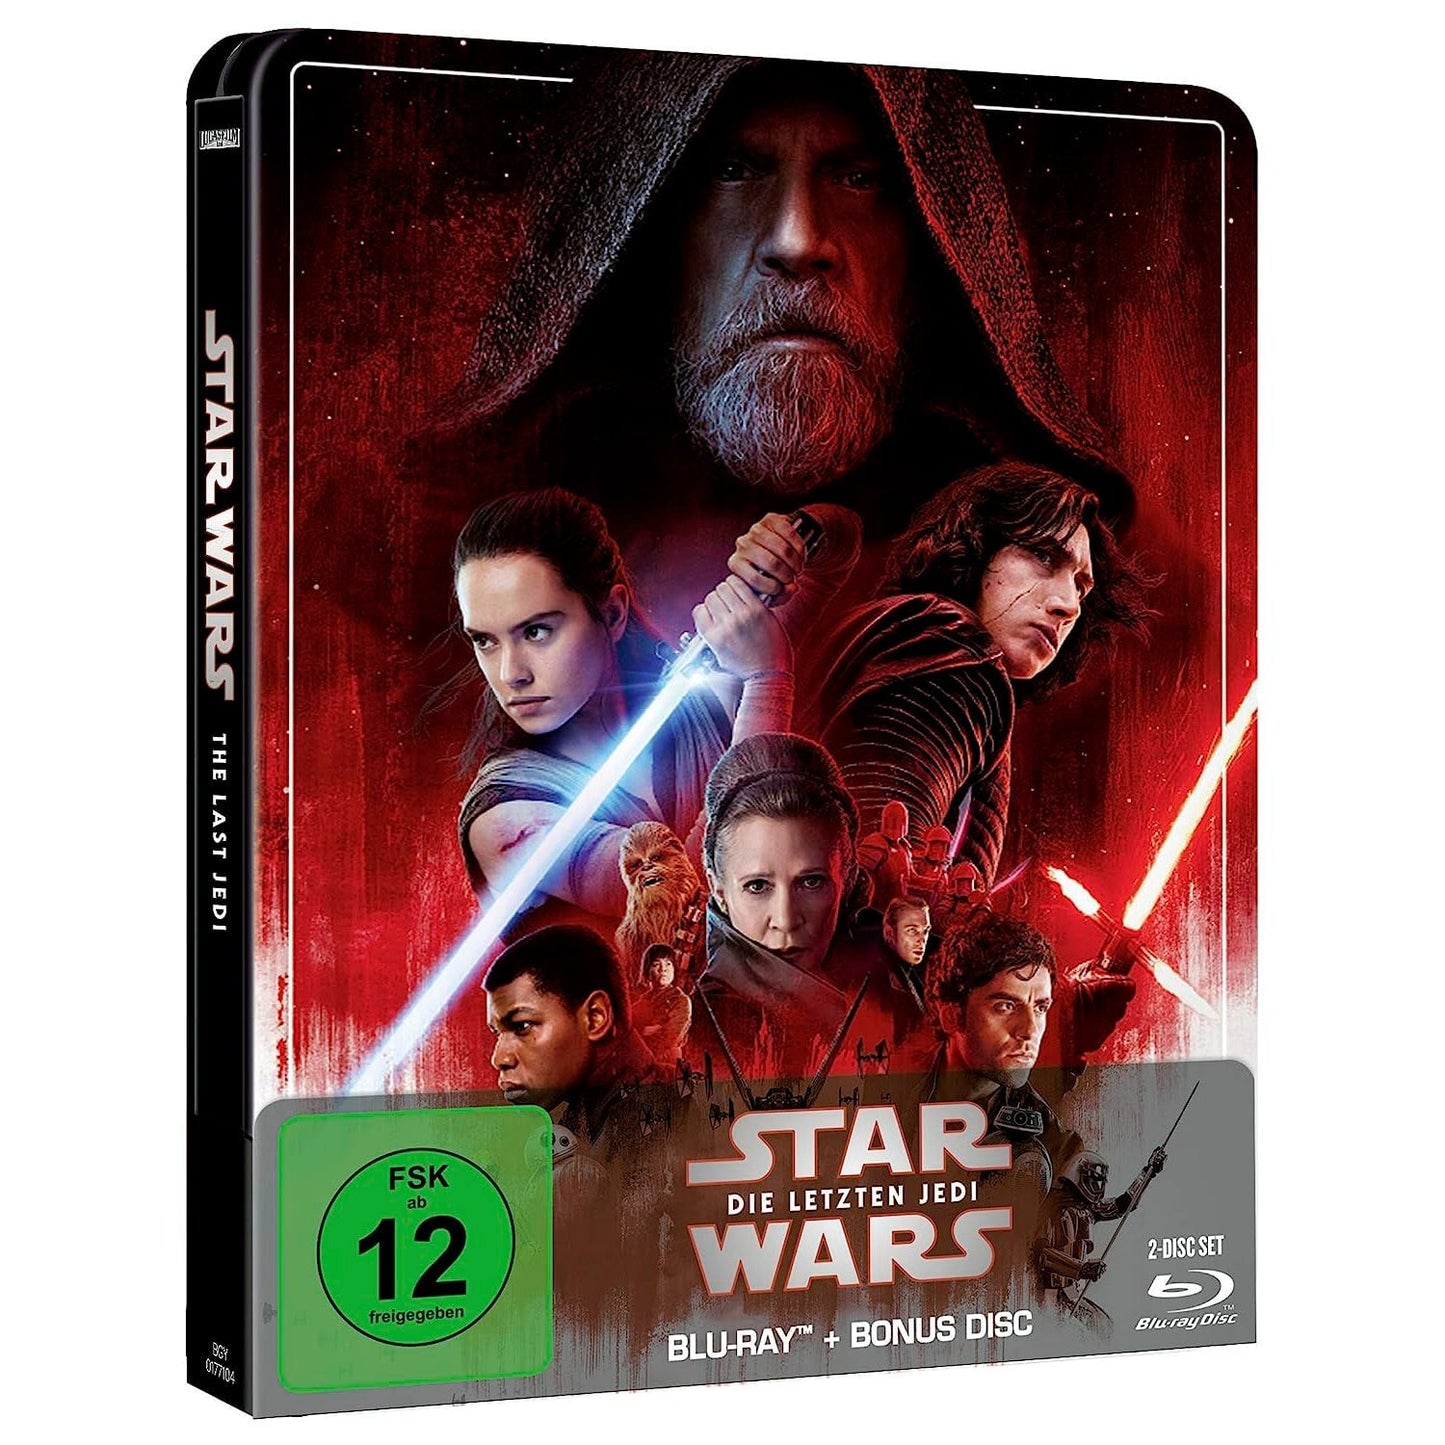 Звёздные войны: Эпизод VIII – Последние джедаи (Blu-ray + Бонусный диск) Steelbook